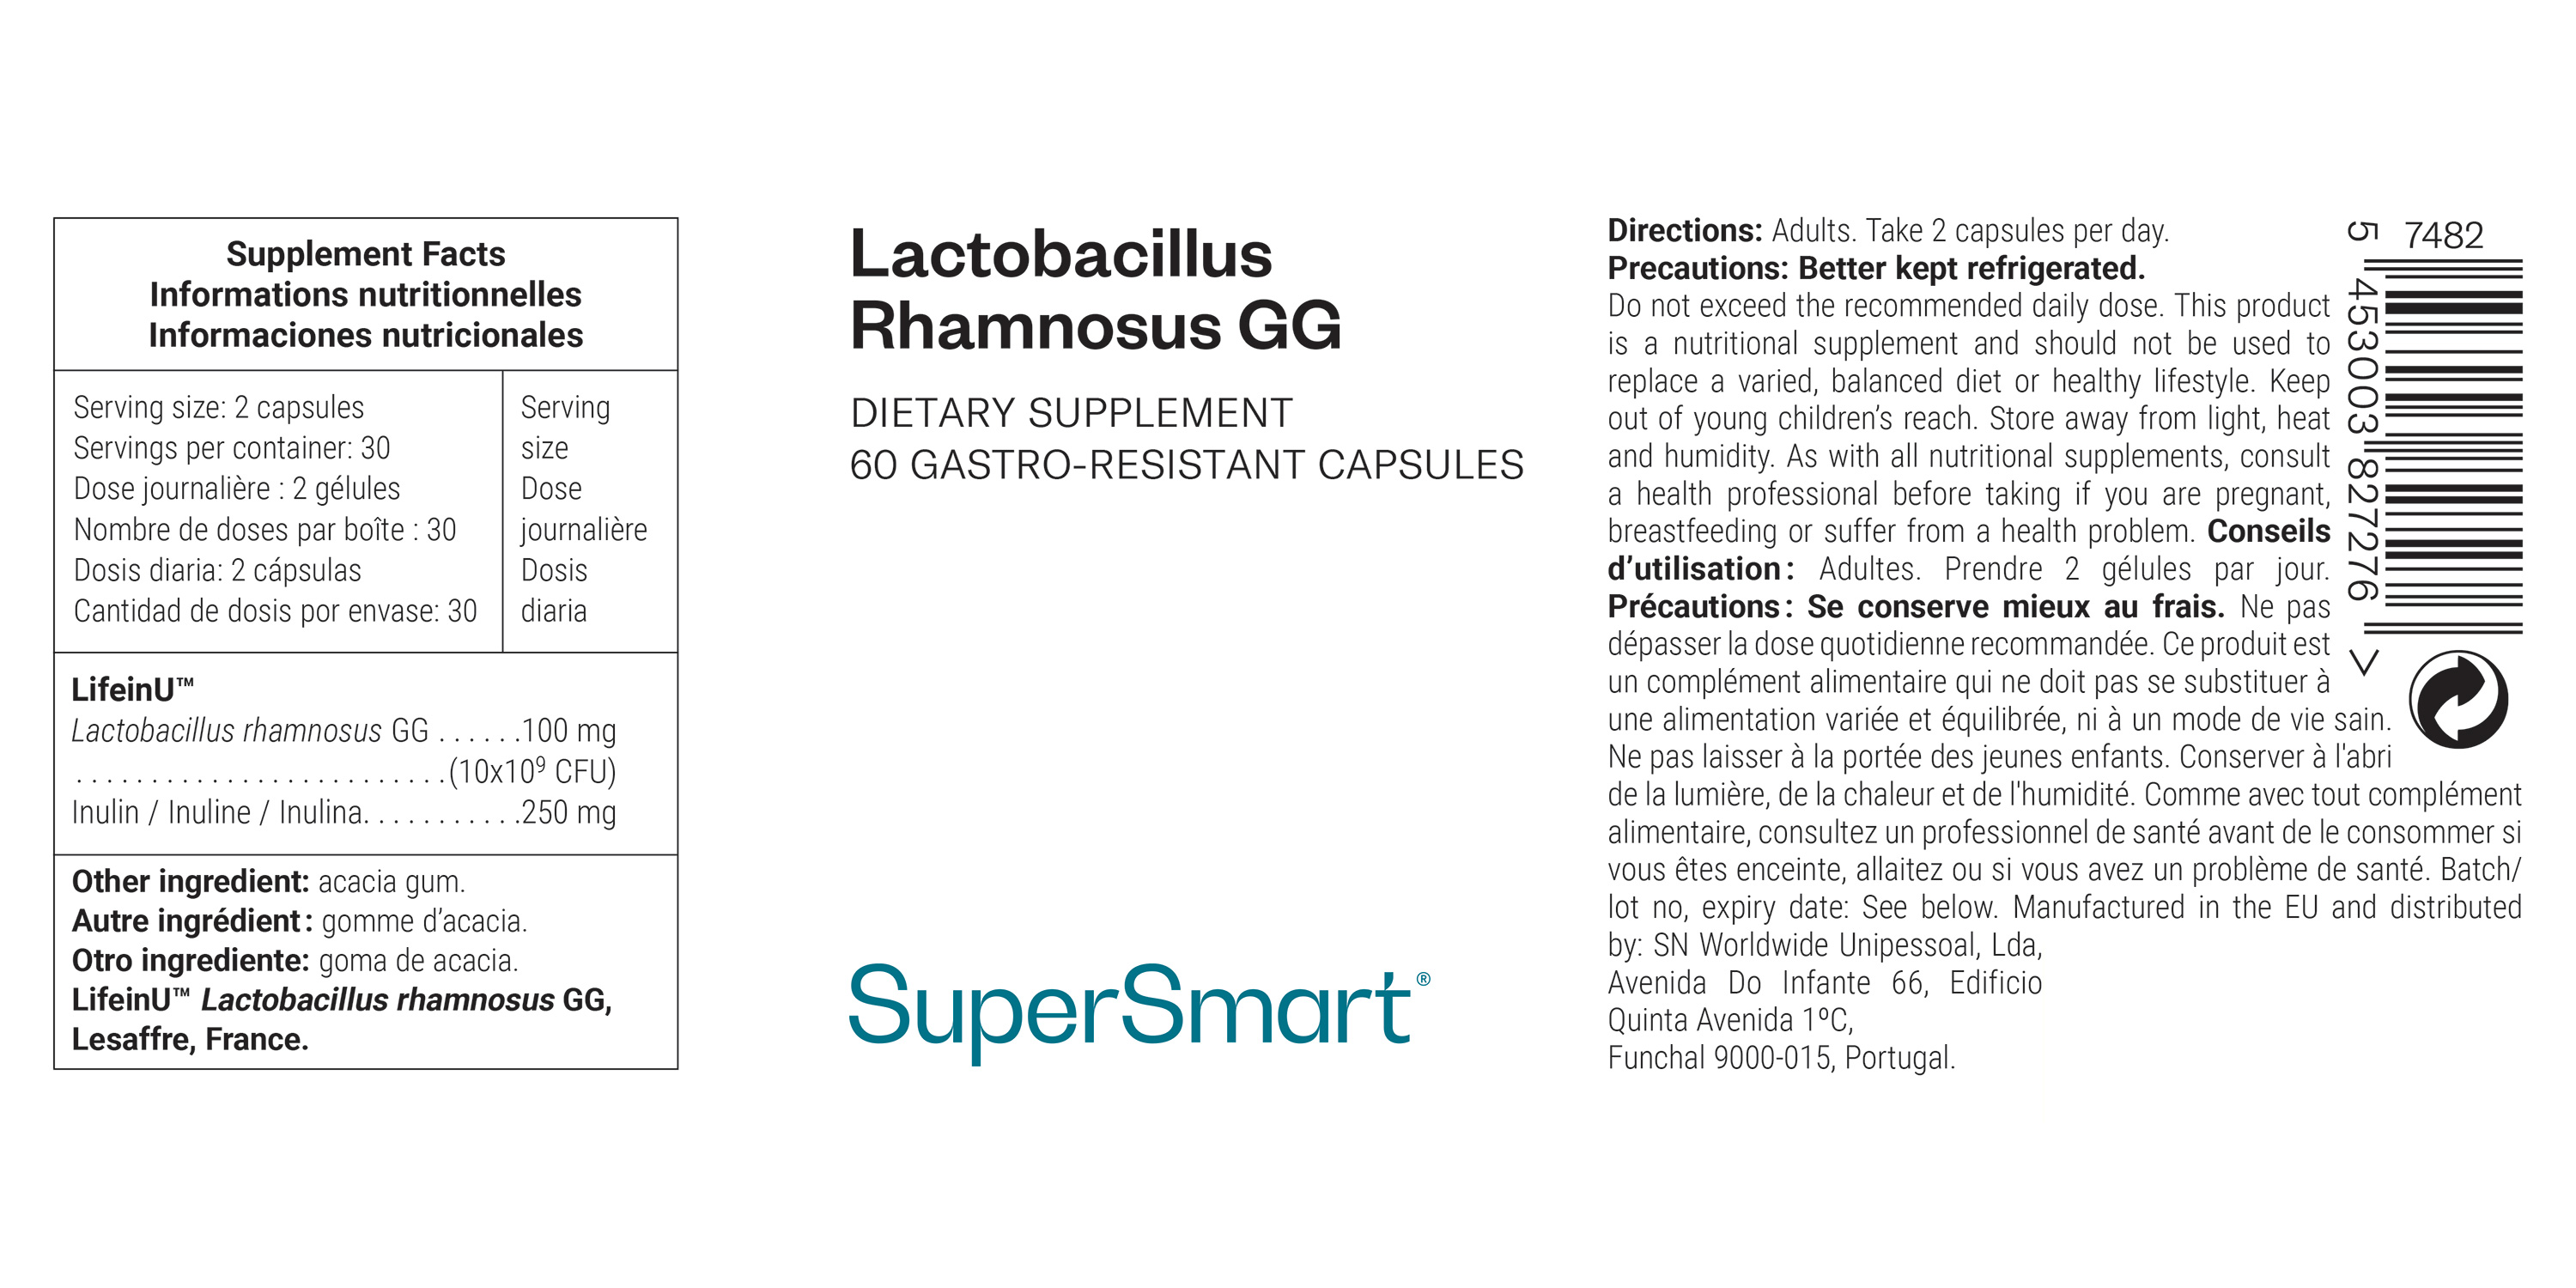 Lactobacillus Rhamnosus GG Supplement